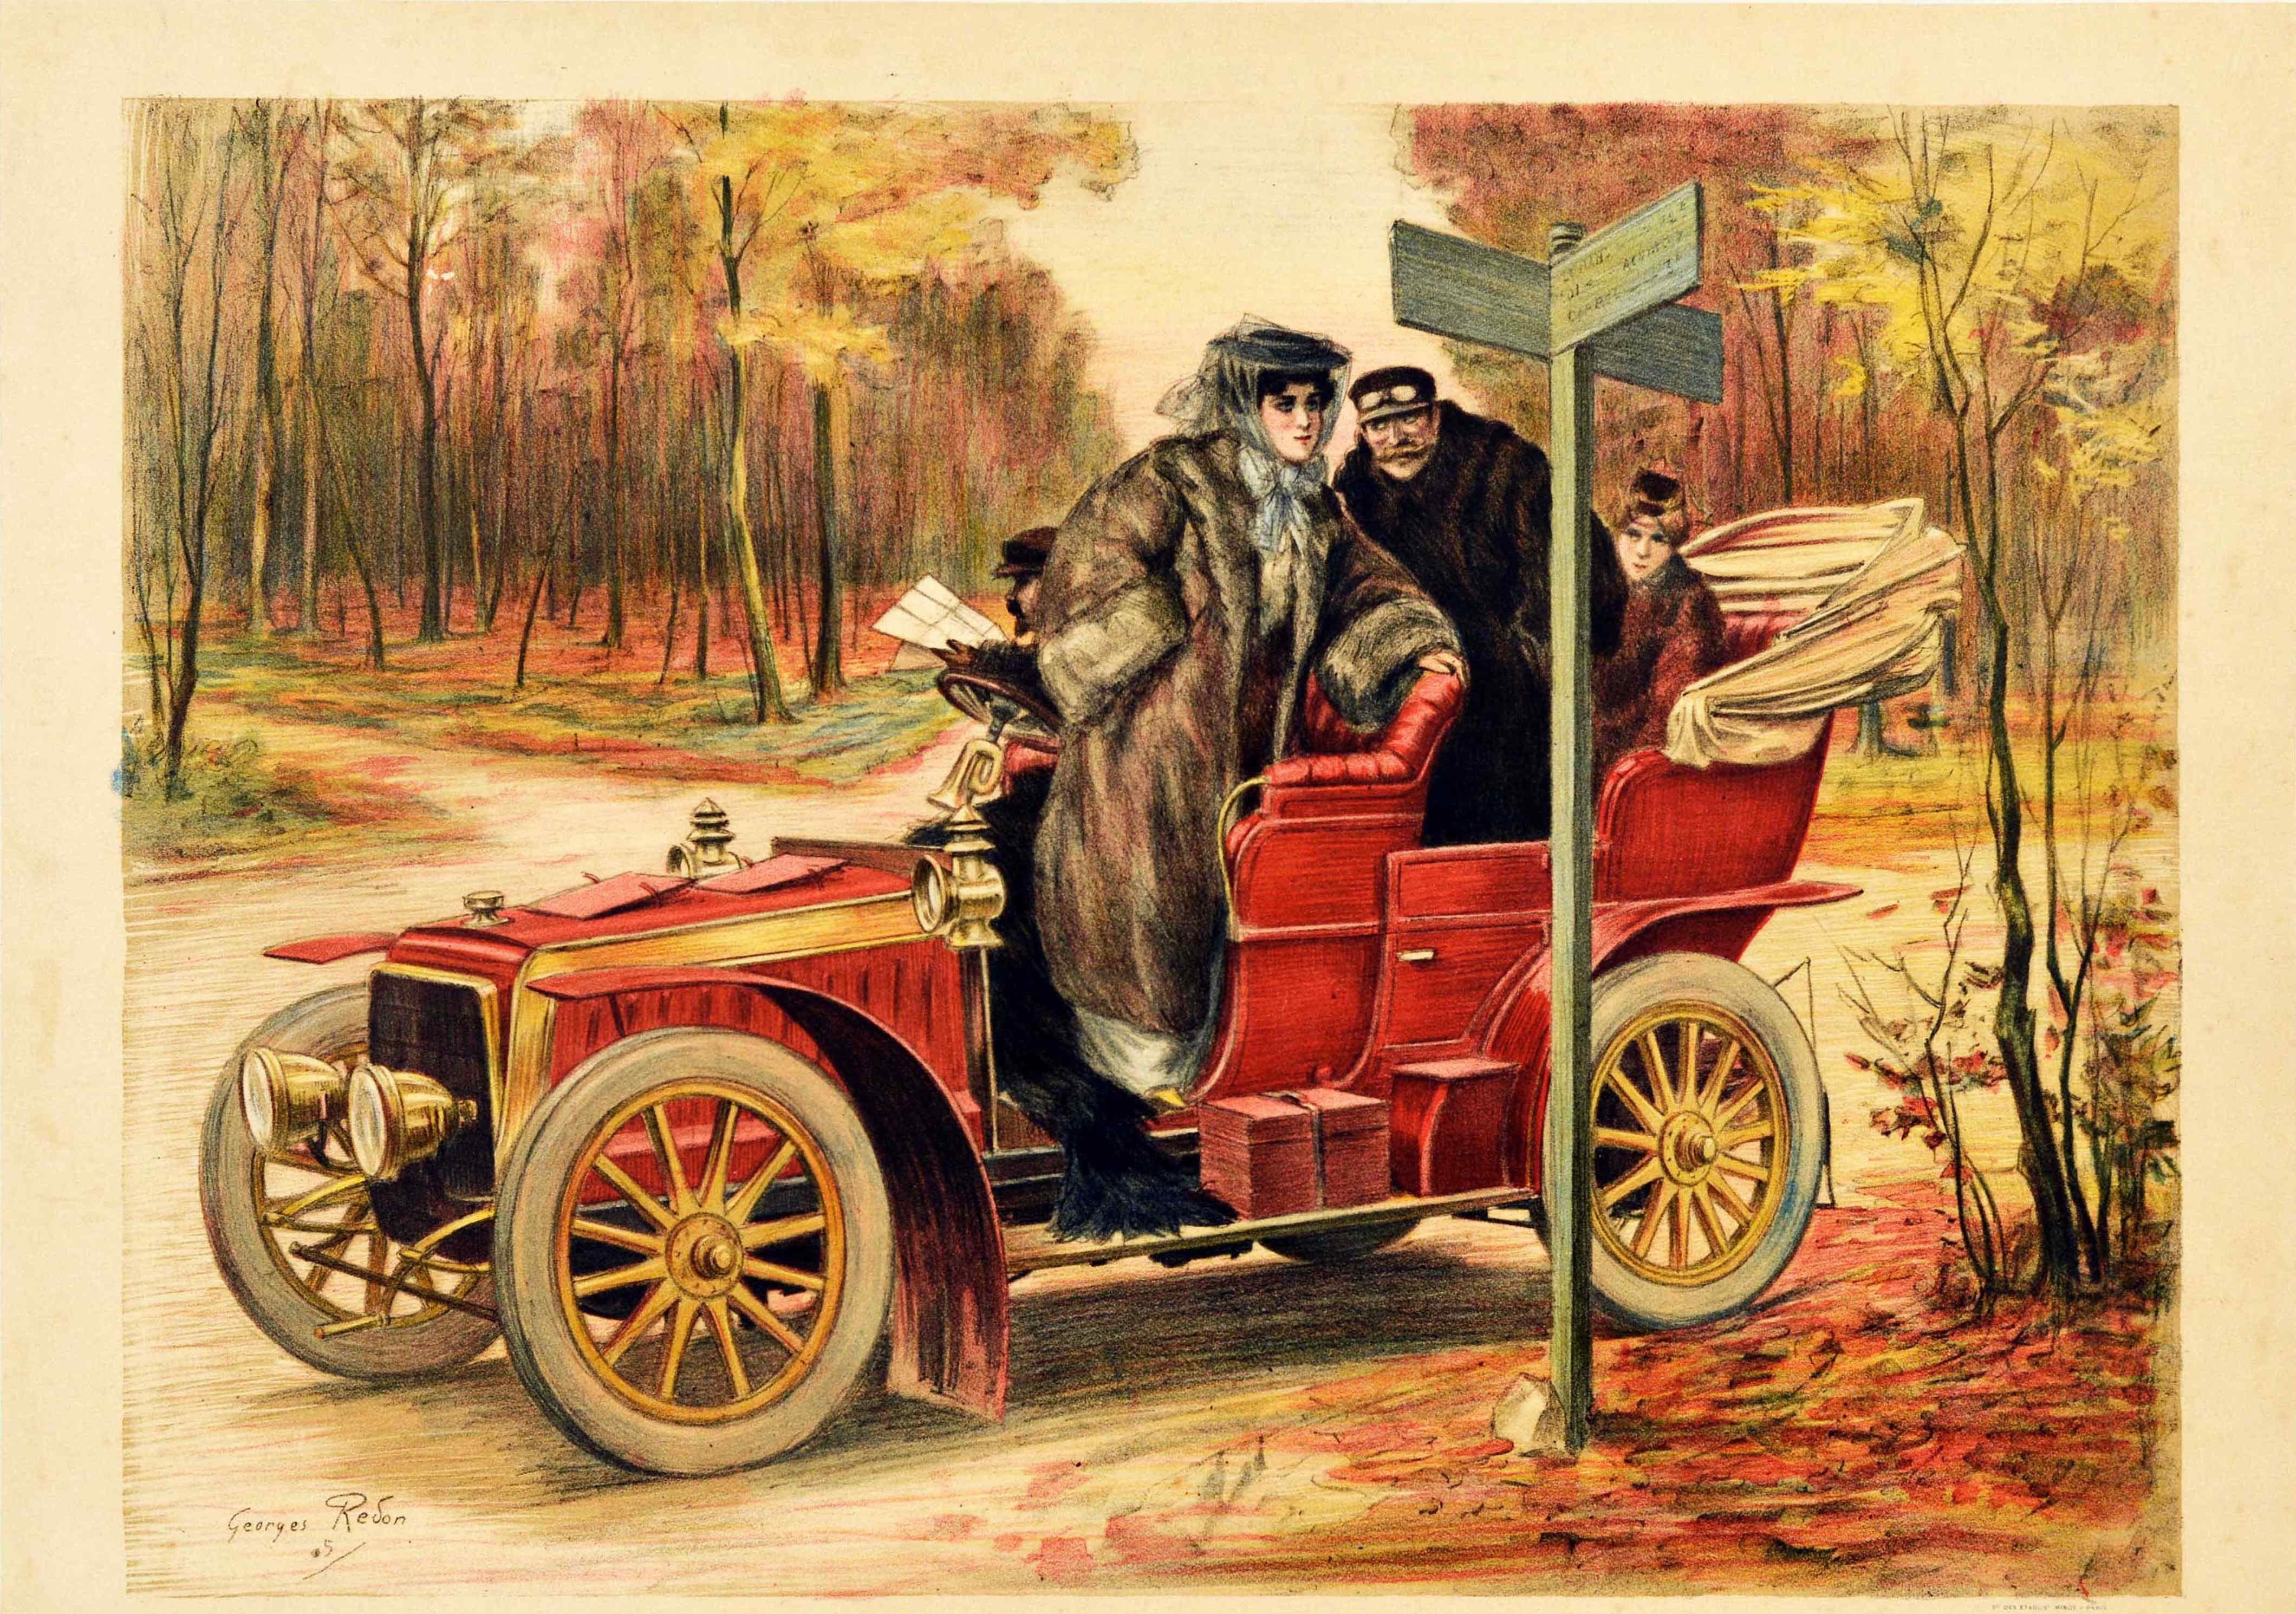 Original Antique Poster Le Tourisme Automobile Road Trip Travel Classic Car Art - Print by Georges Redon